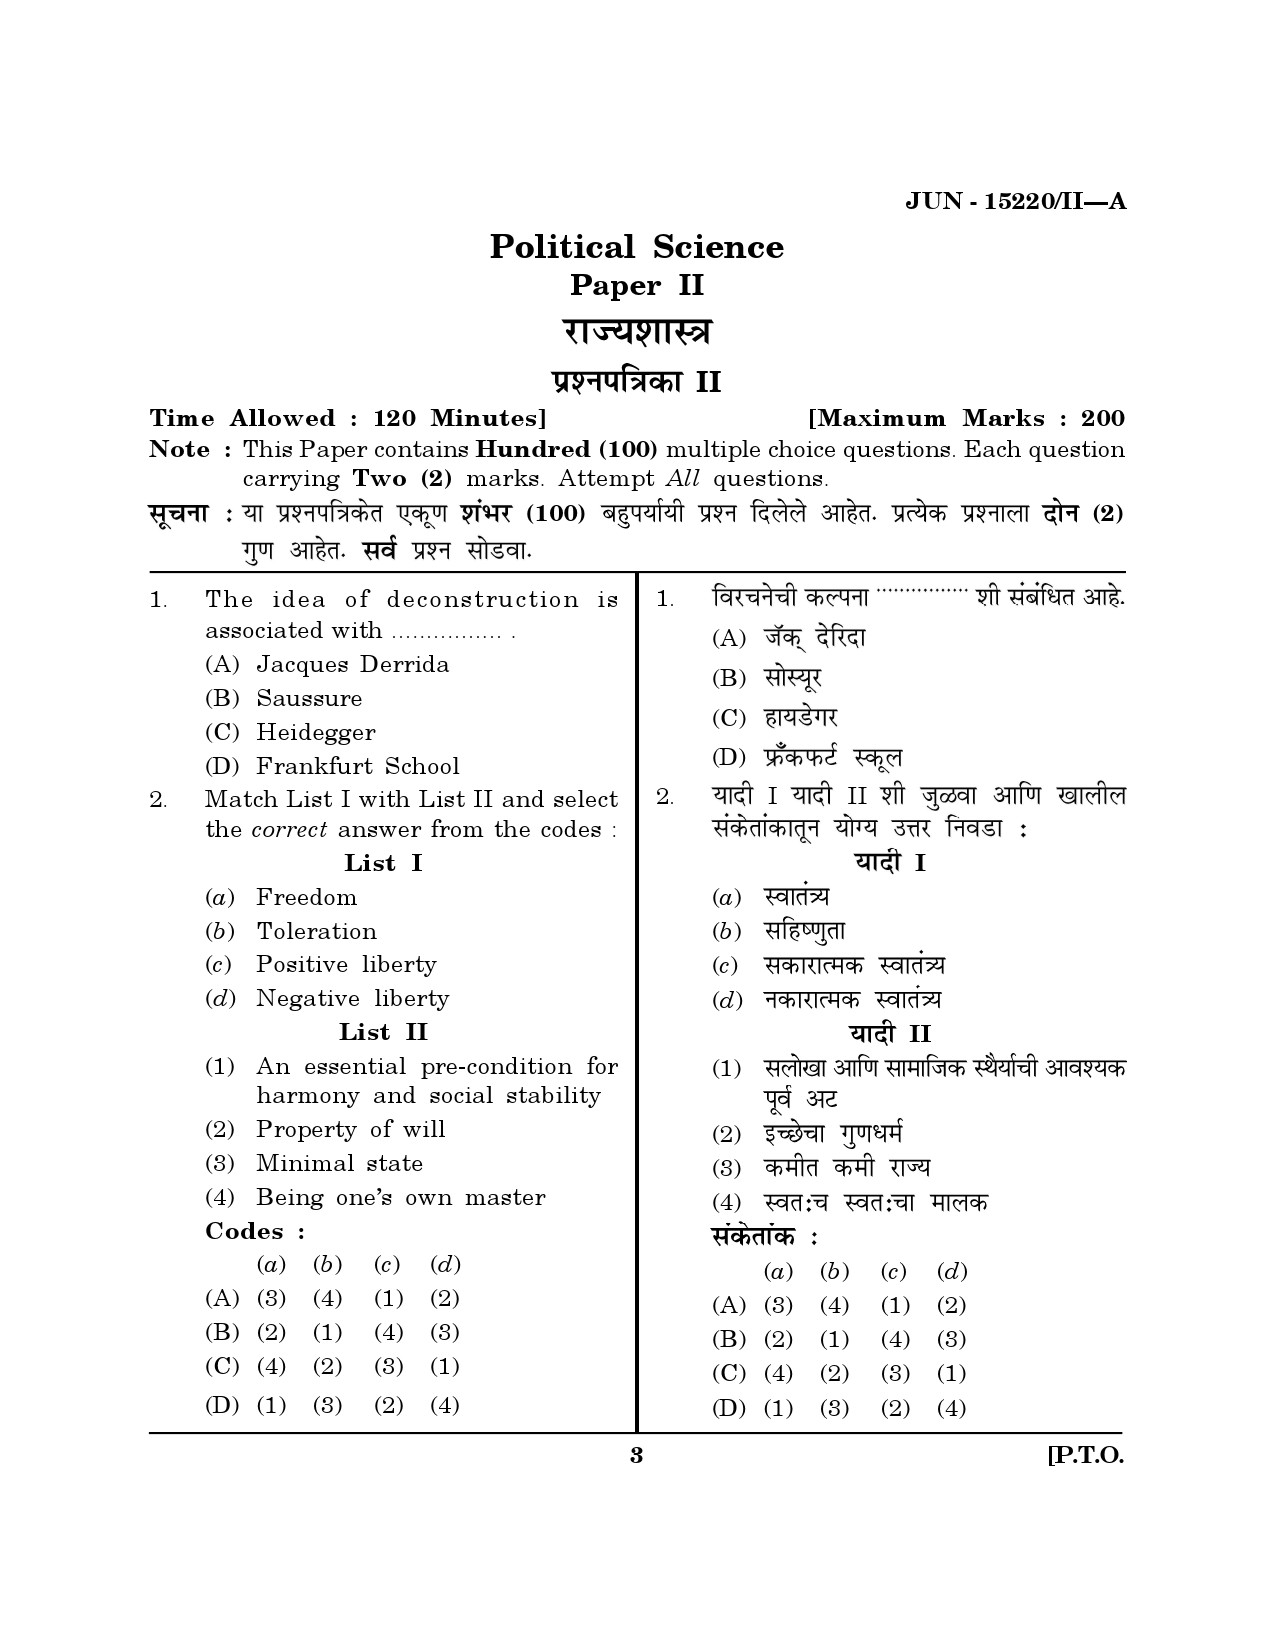 Maharashtra SET Political Science Question Paper II June 2020 2